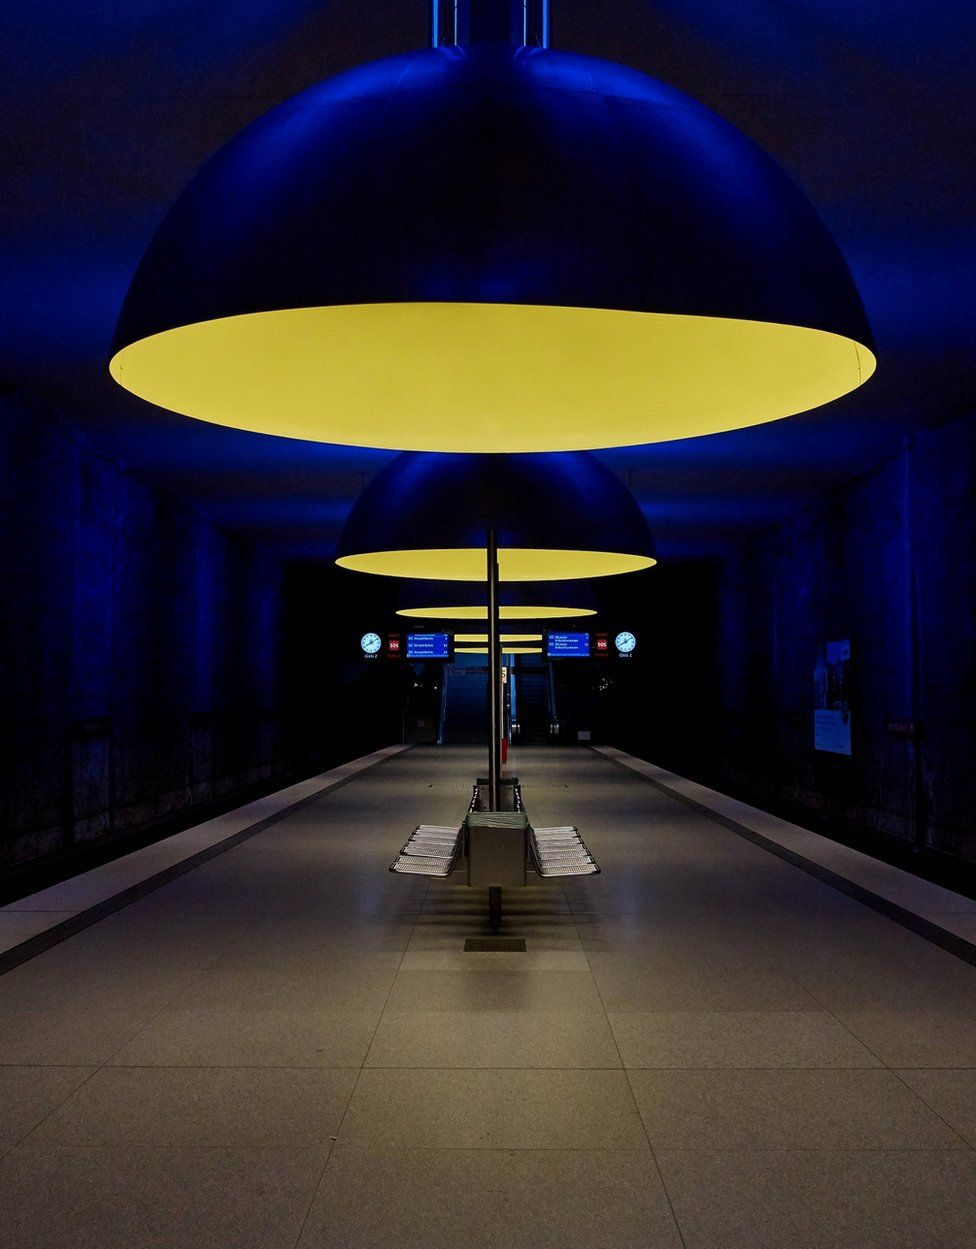 An underground station